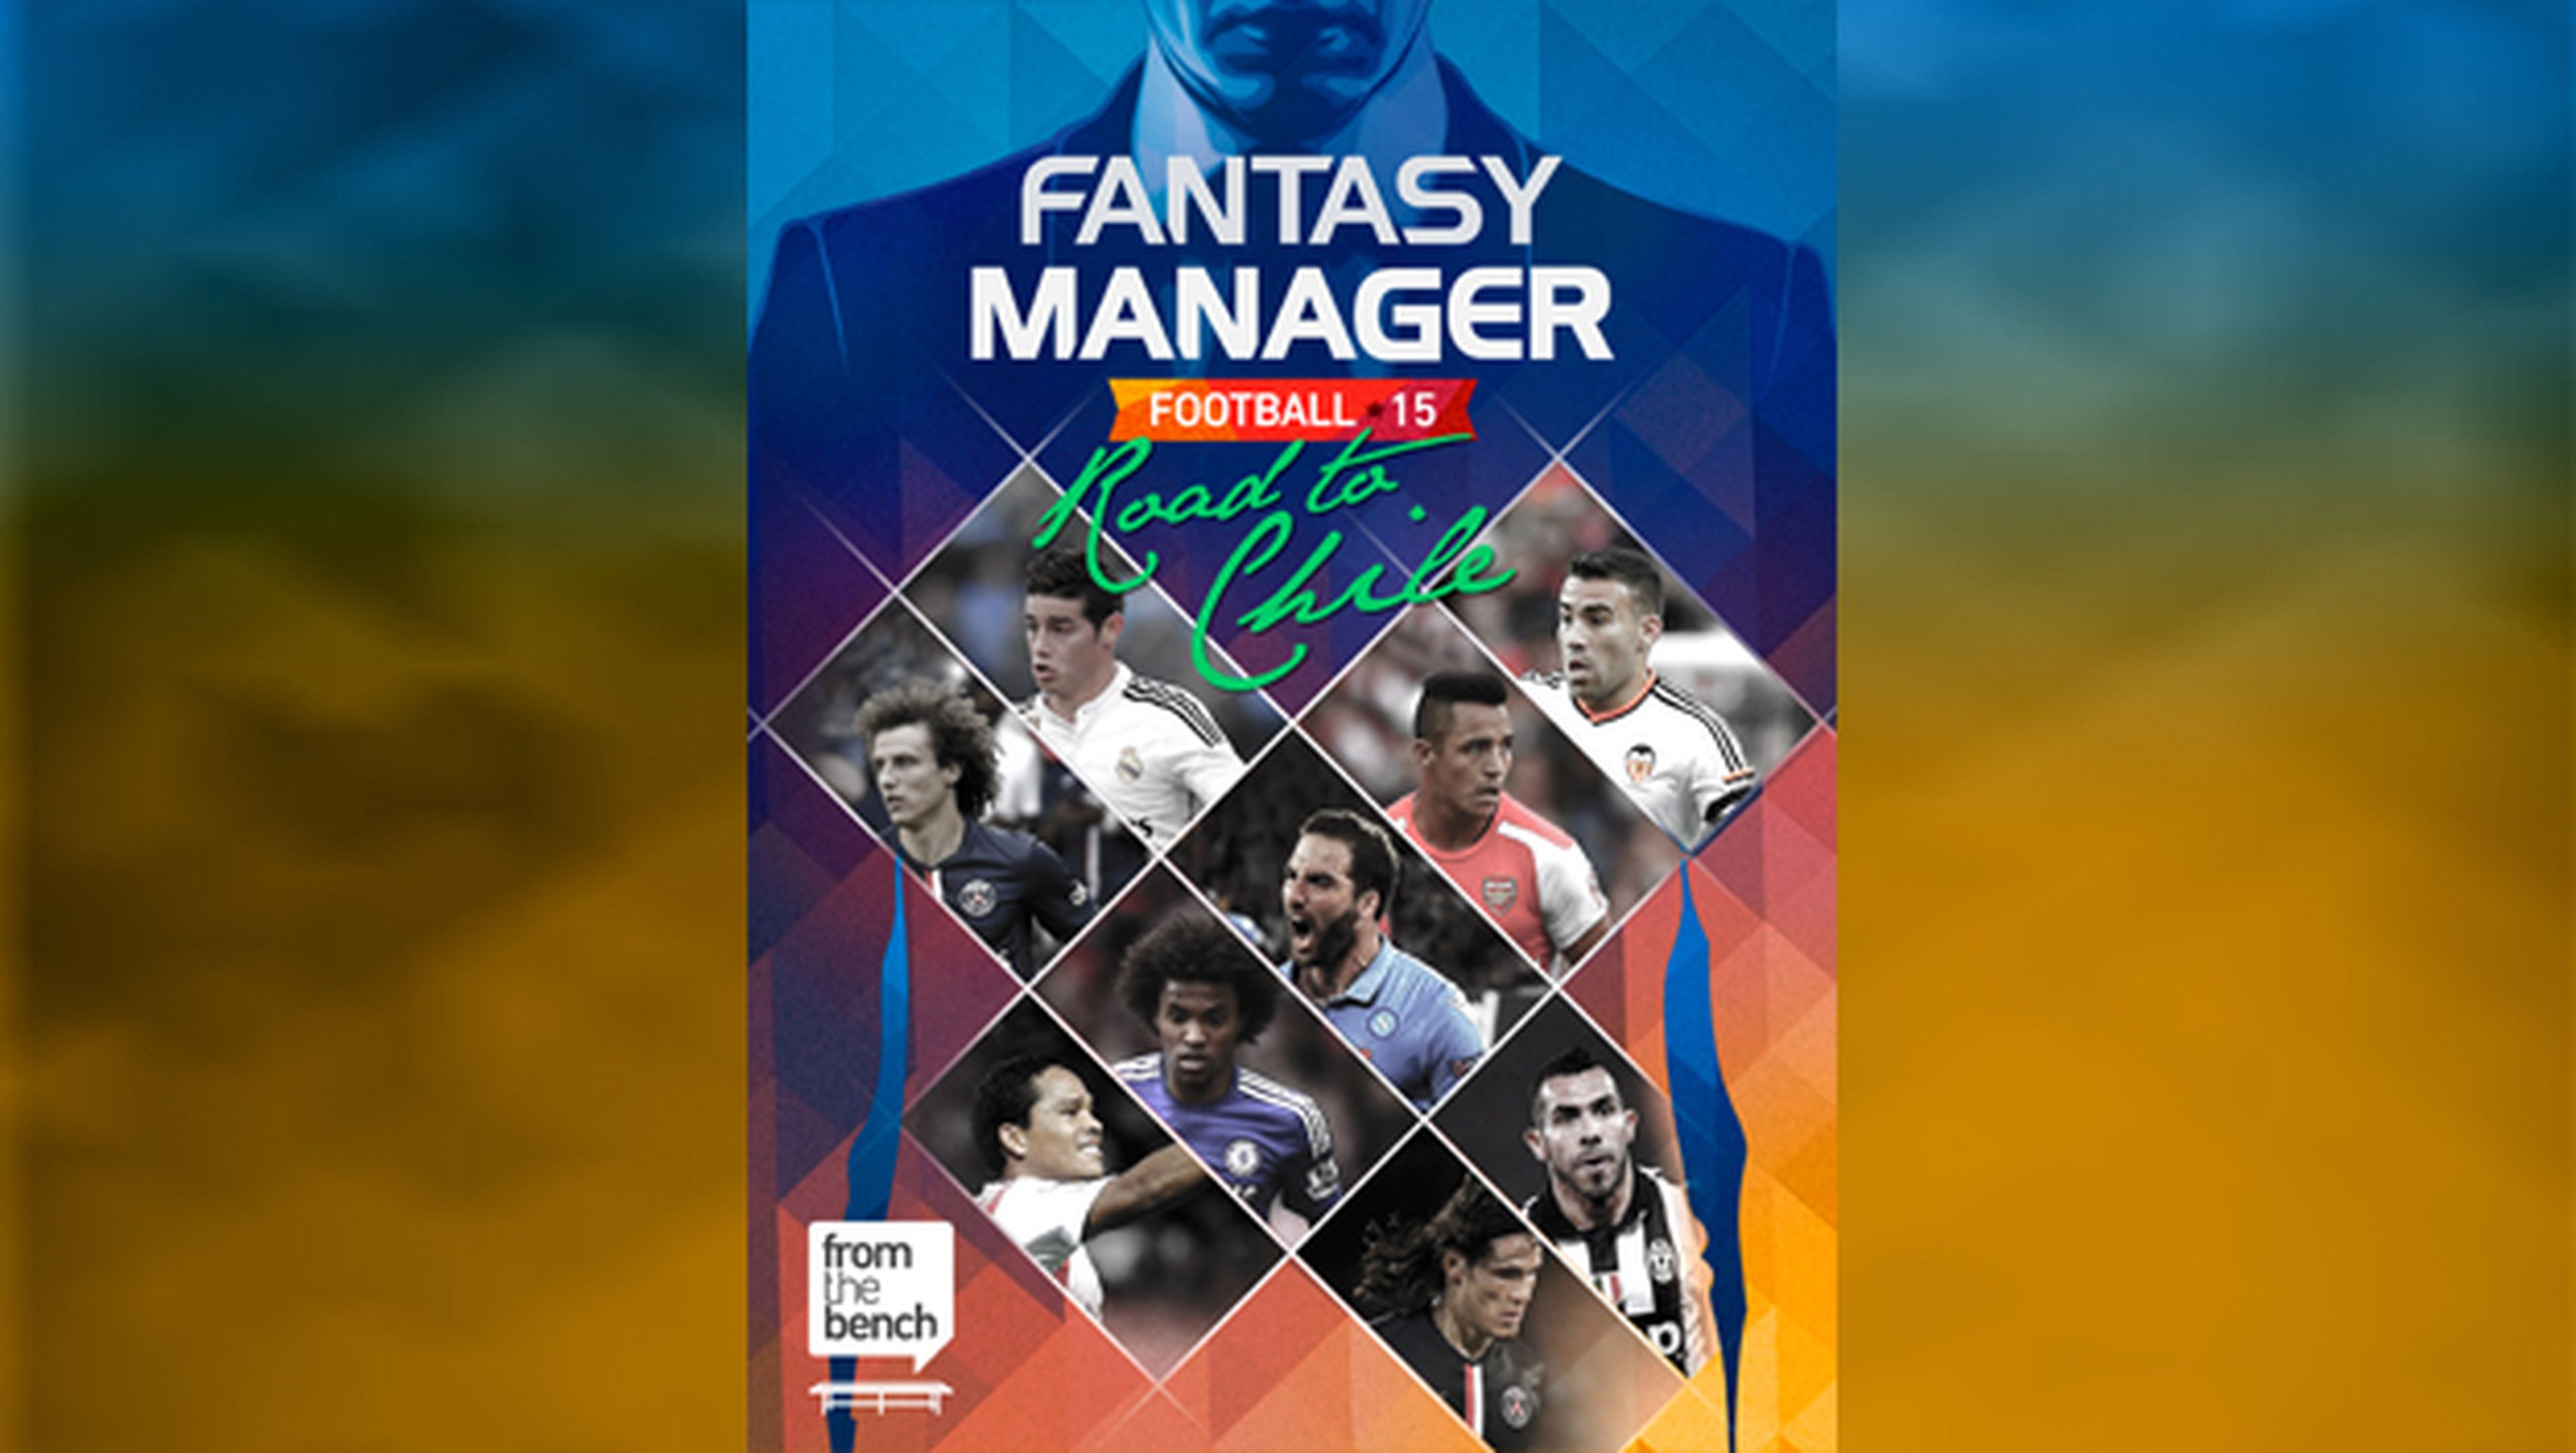 Fantasy Manager Football te hará vivir intensamente la Copa América